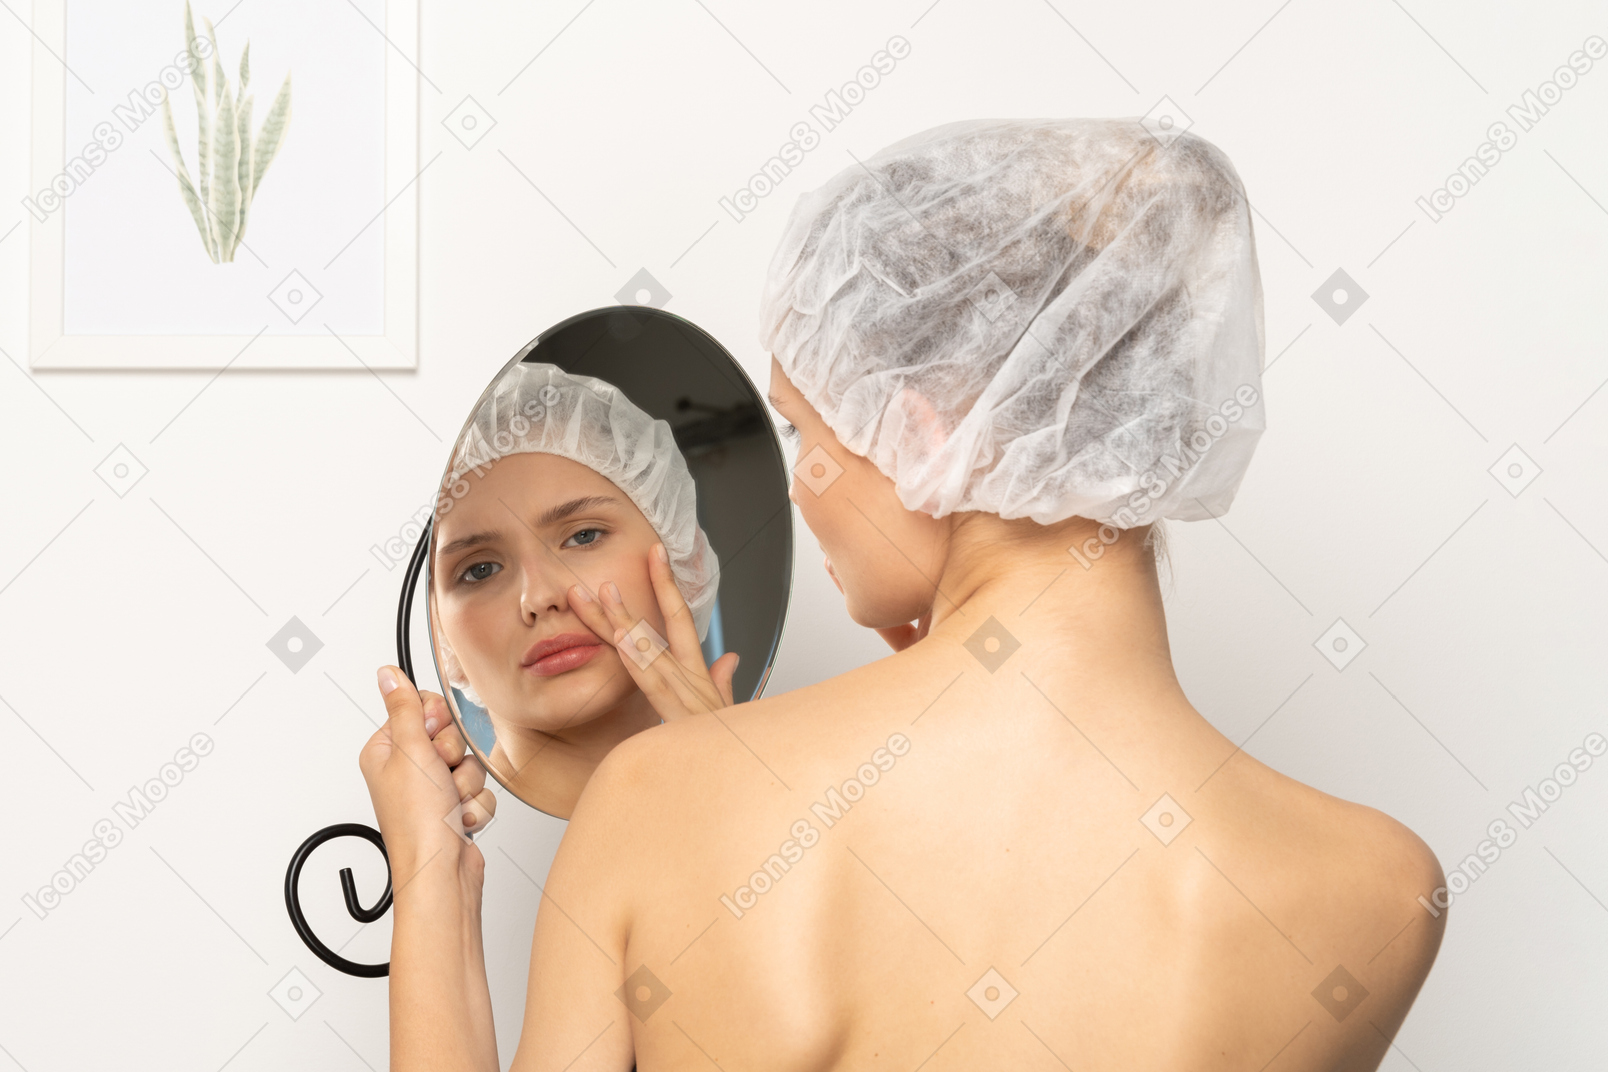 Jovem de touca cirúrgica se olhando no espelho